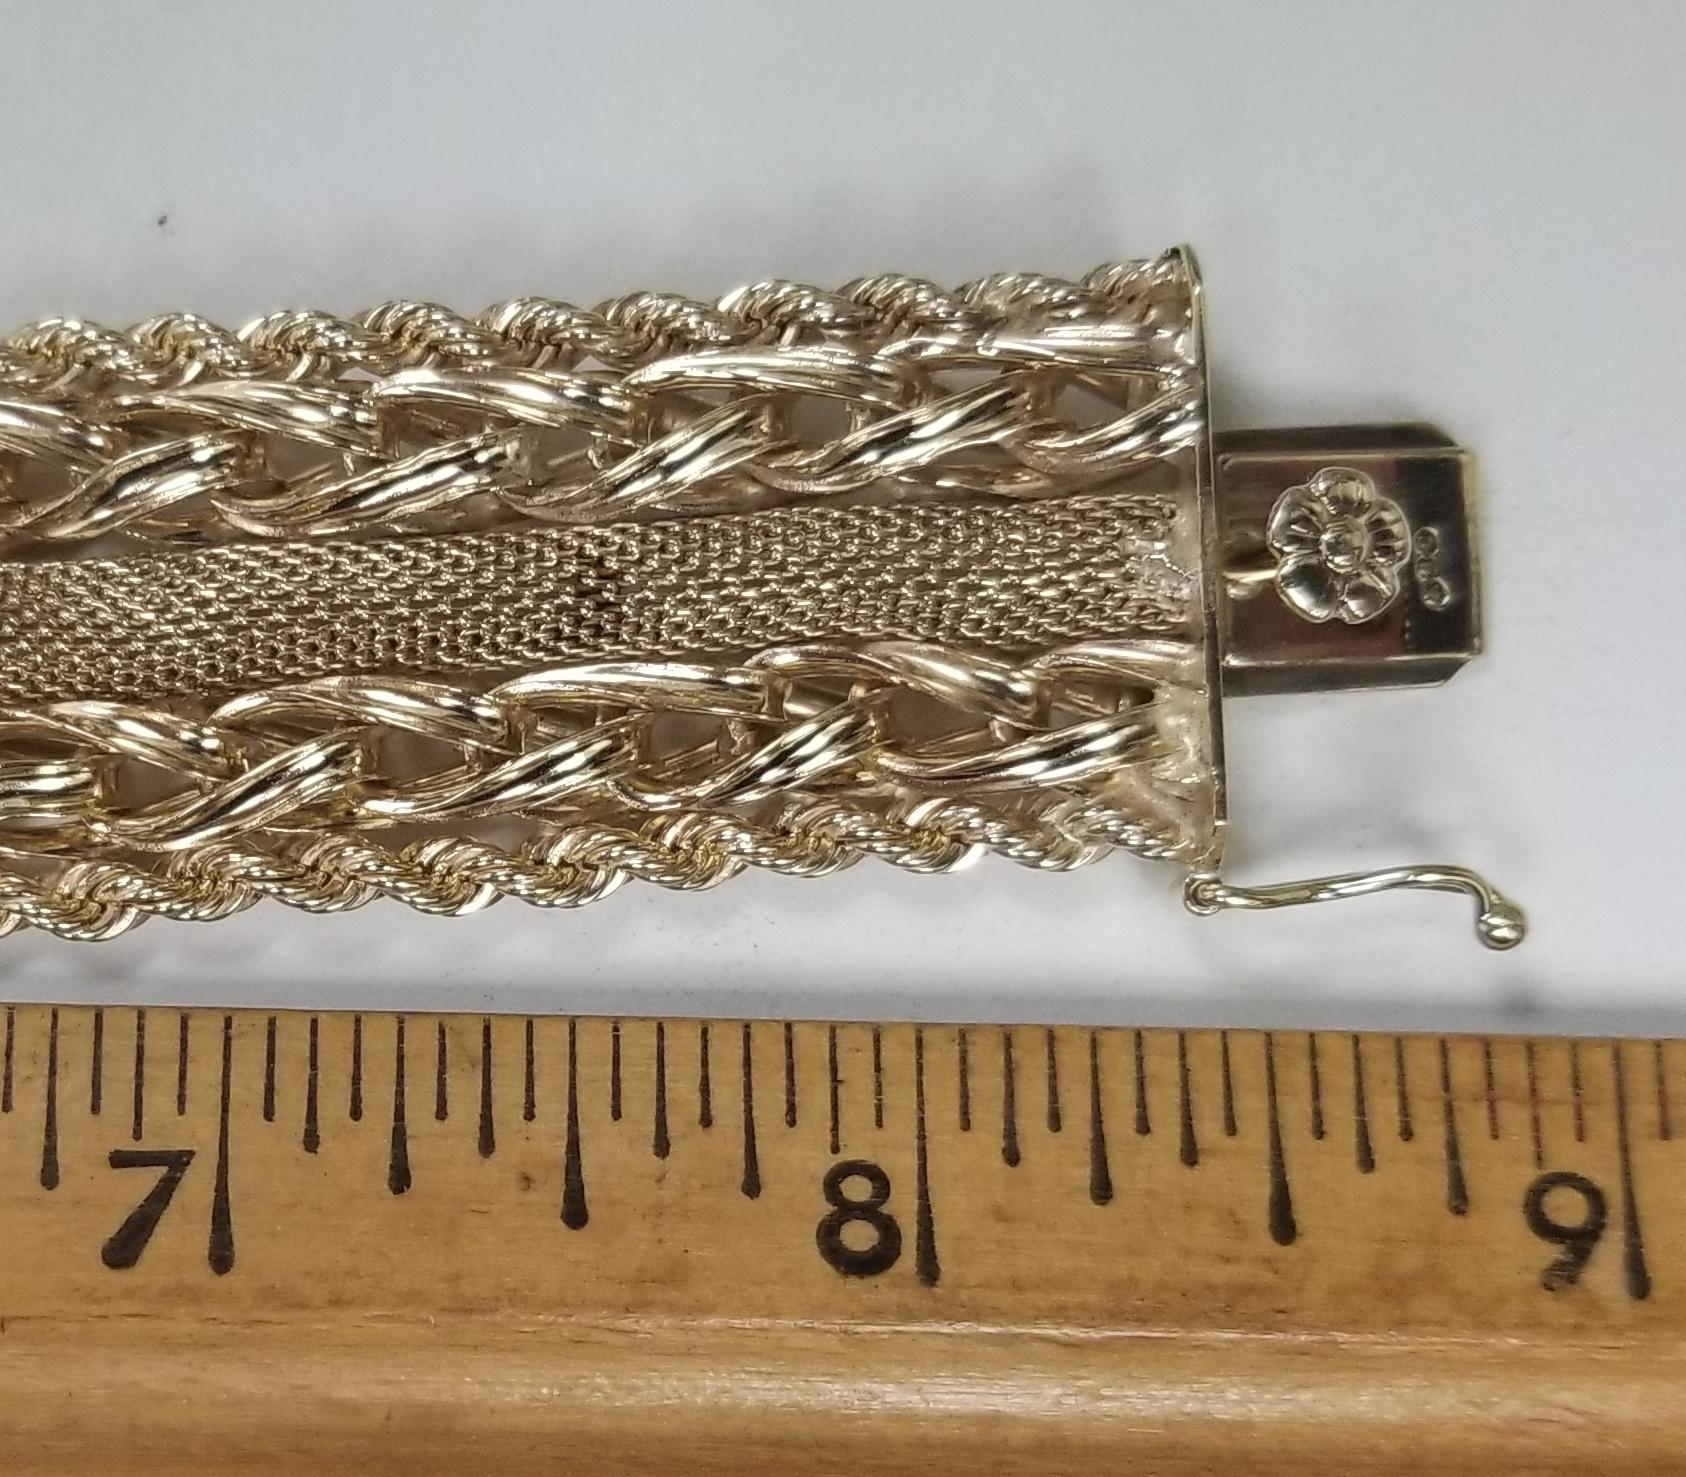 rope link bracelet